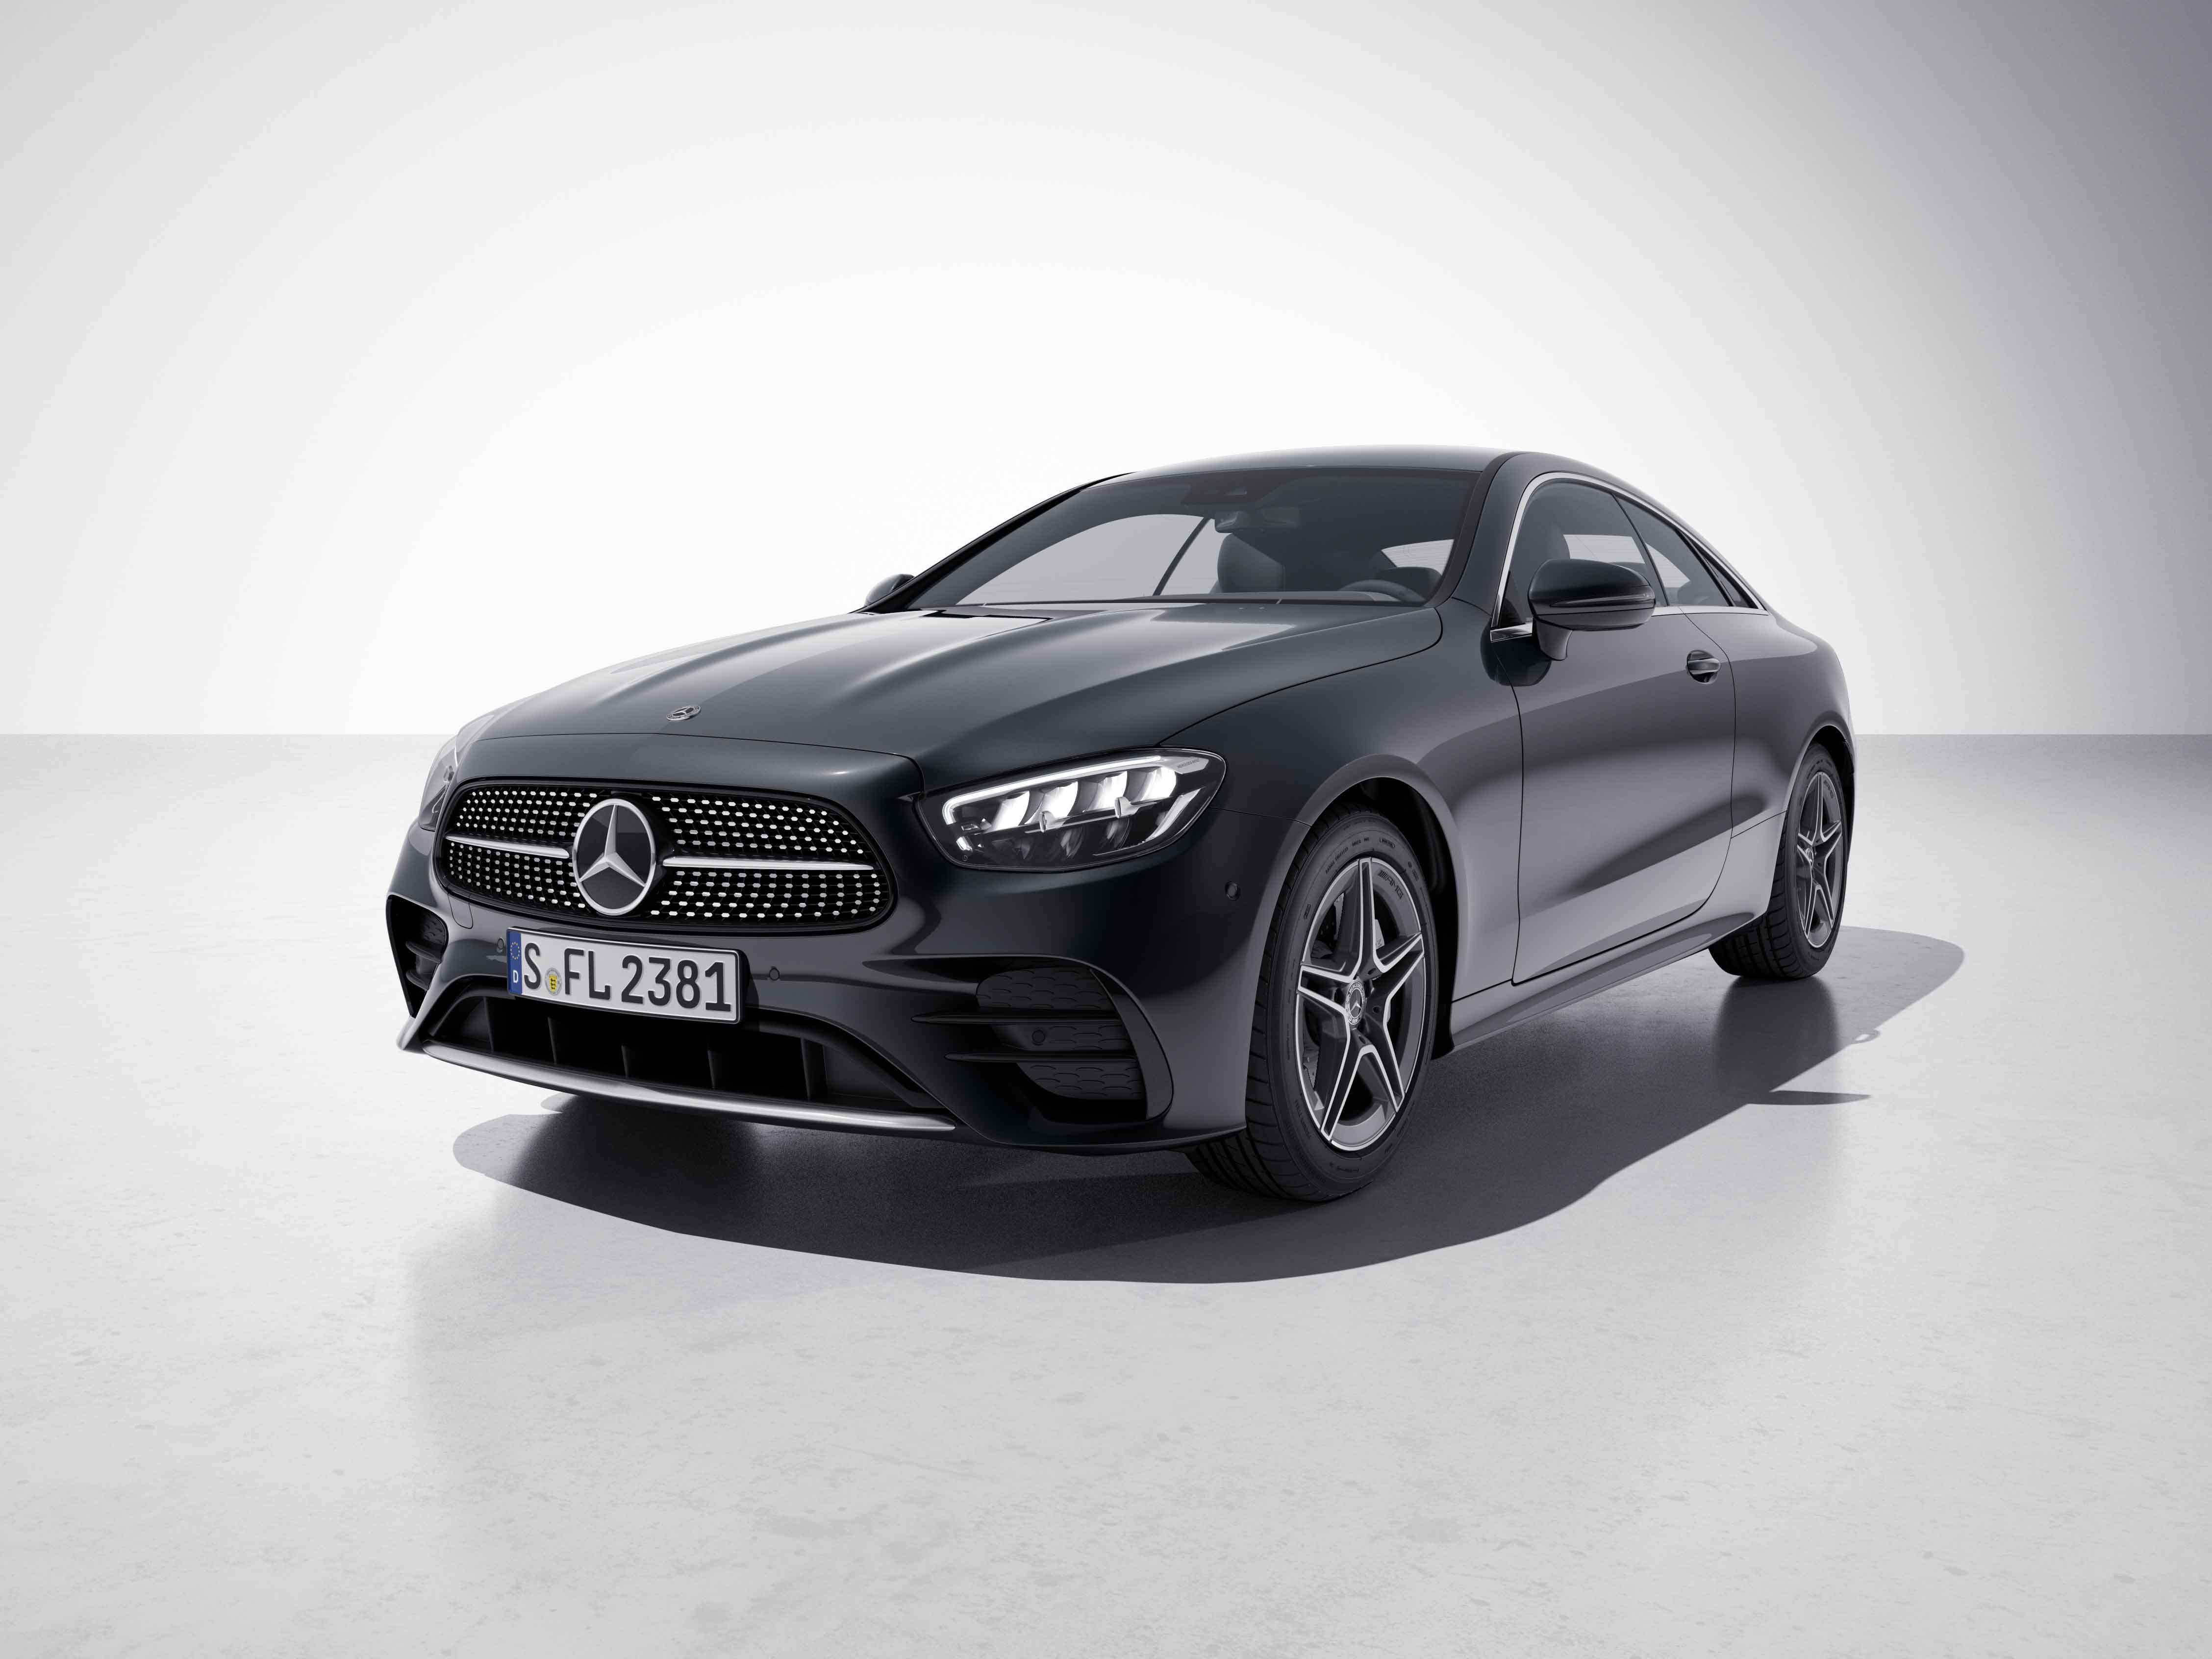 Vue de trois quarts de profil de la Mercedes Classe E Coupé avec la peinture métallisée gris graphite